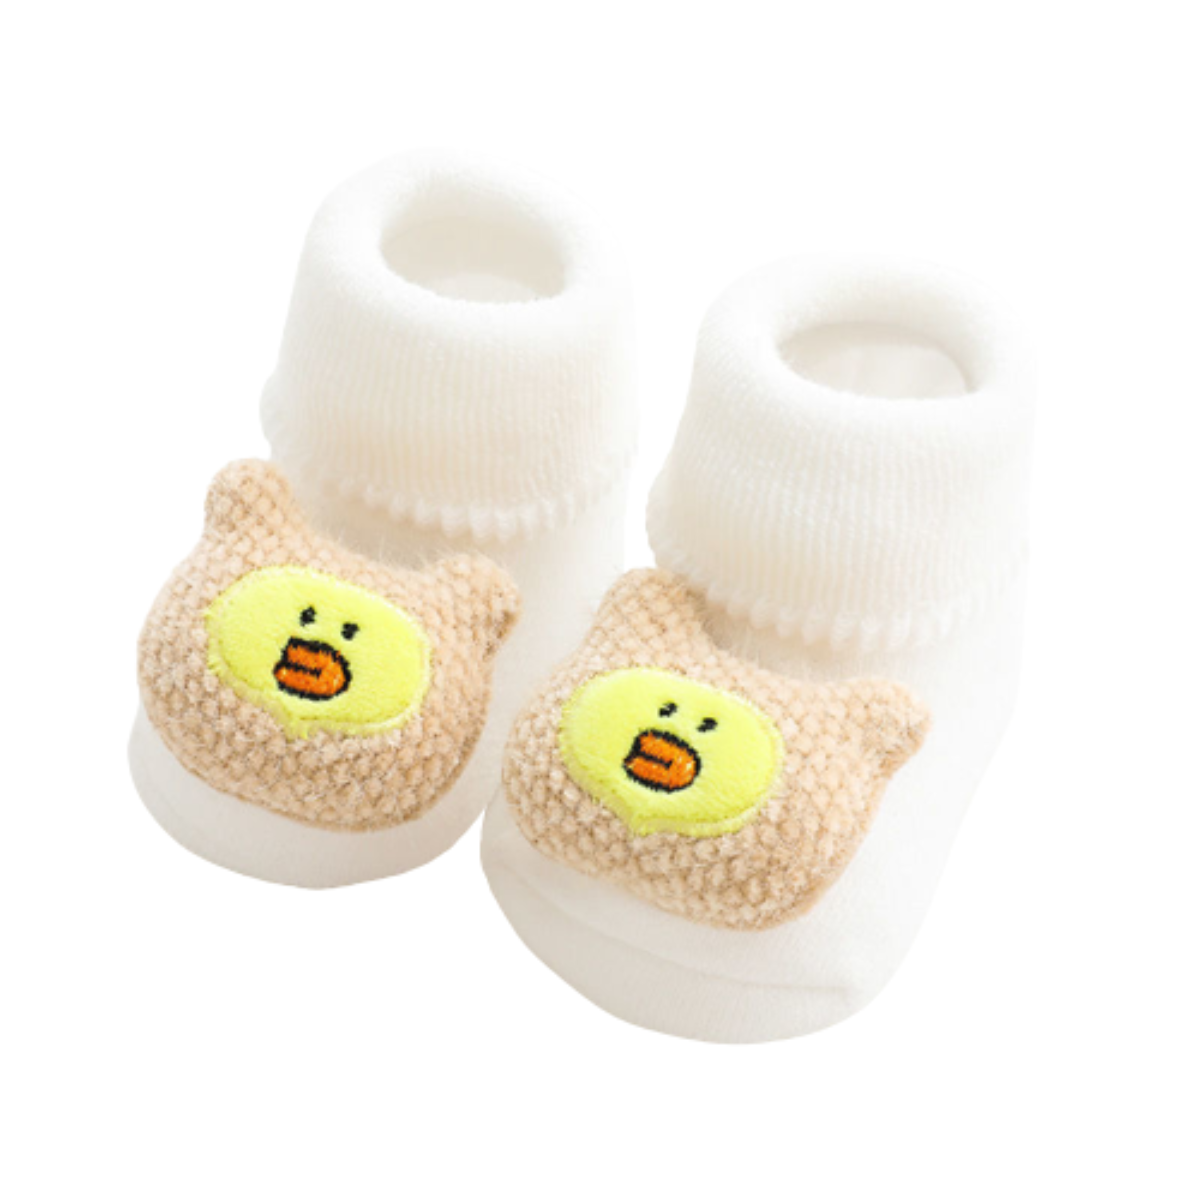 Semelle antidérapante Weri Spezials Chaussettes antidérapantes pour bébé et enfant Motif voiture Entièrement en ABS. En coton 